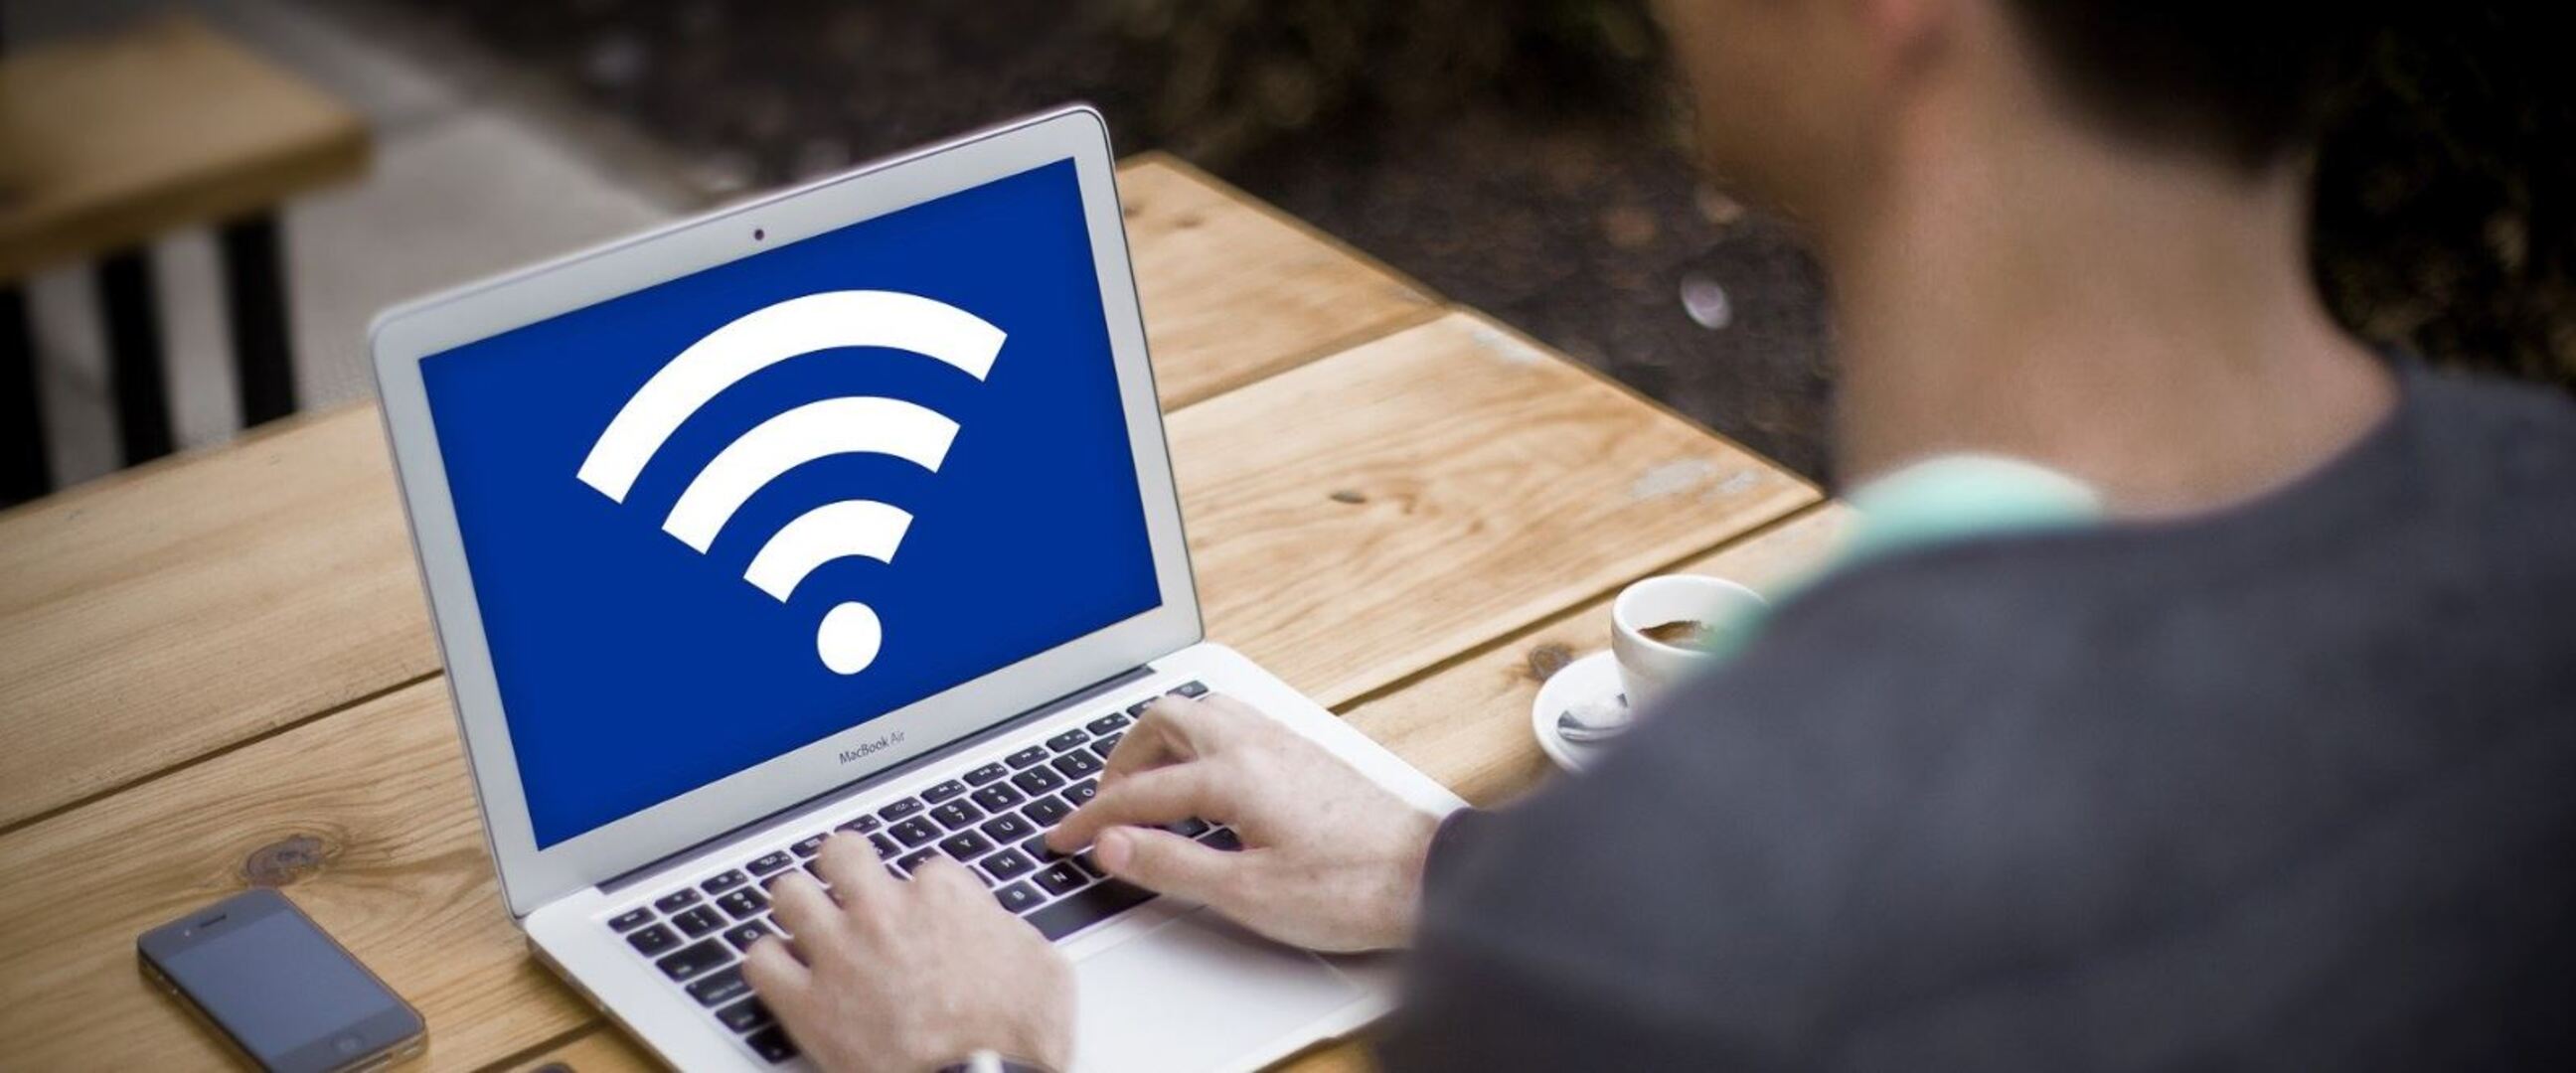 3 Cara mengubah password Wi-Fi rumah IndiHome, mudah dan cepat